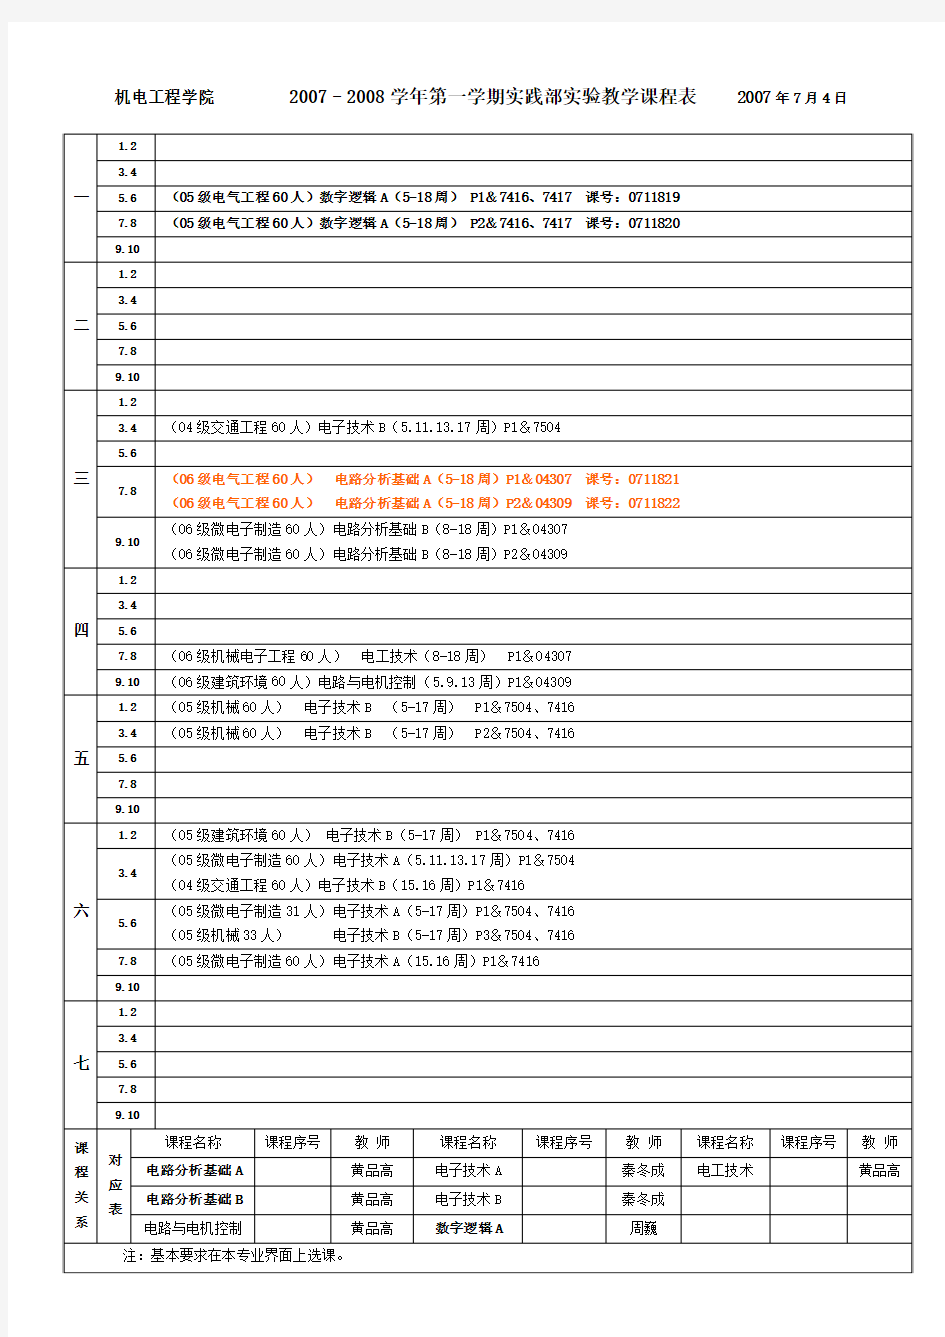 桂林电子工业大学 2728_1实践部实验教学课程表